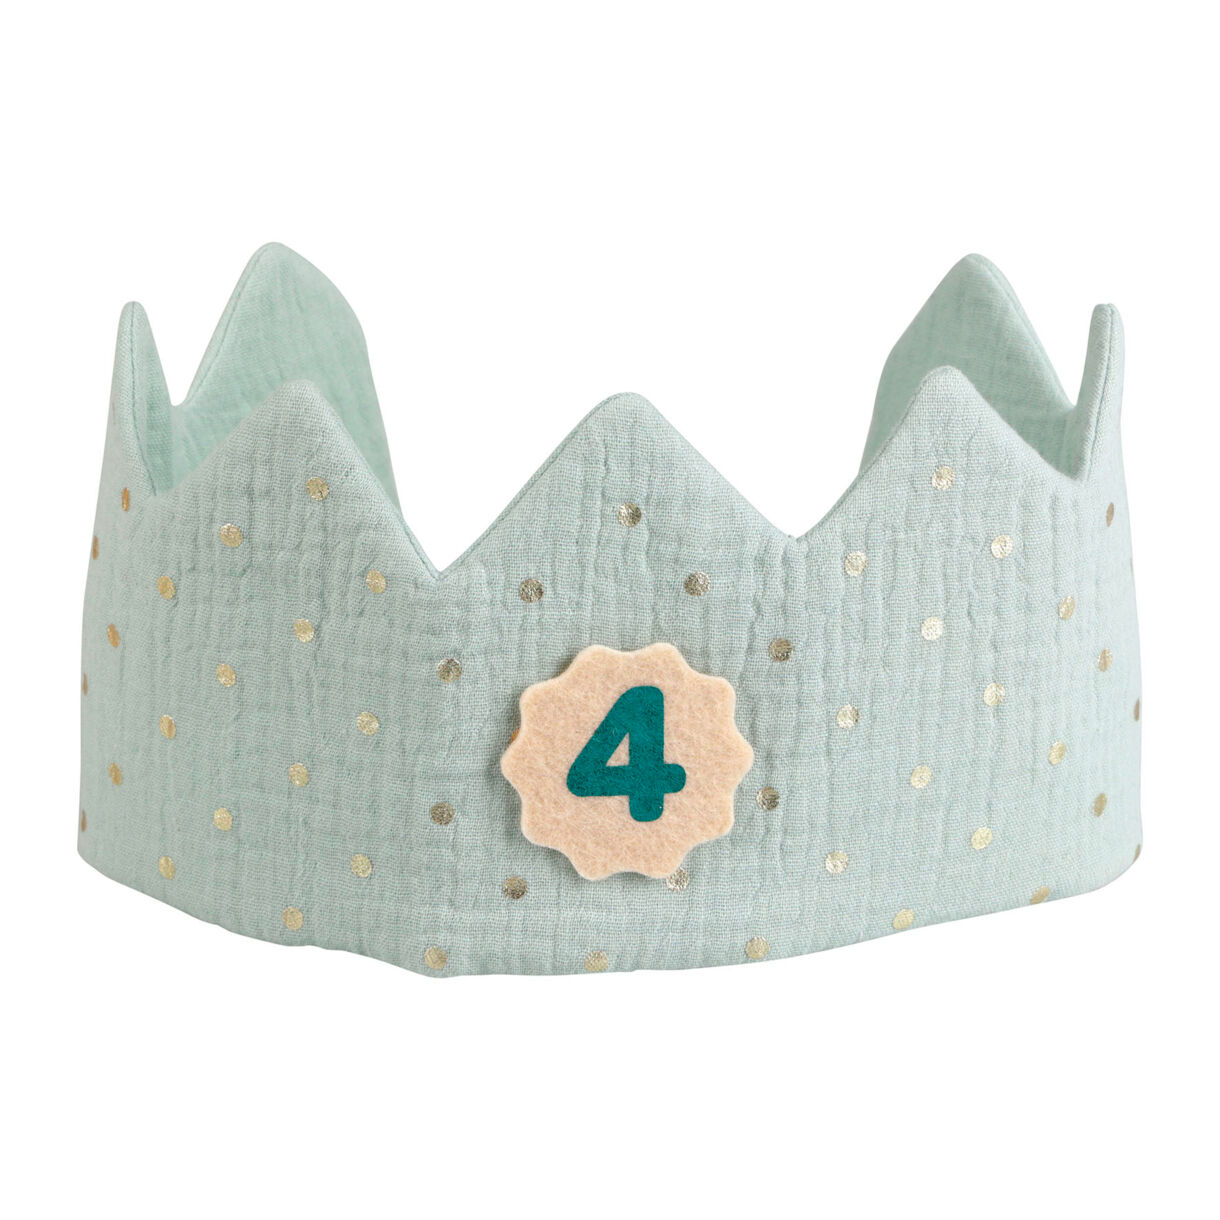 Corona compleanno bambini cotone (40 cm) Roi Verde